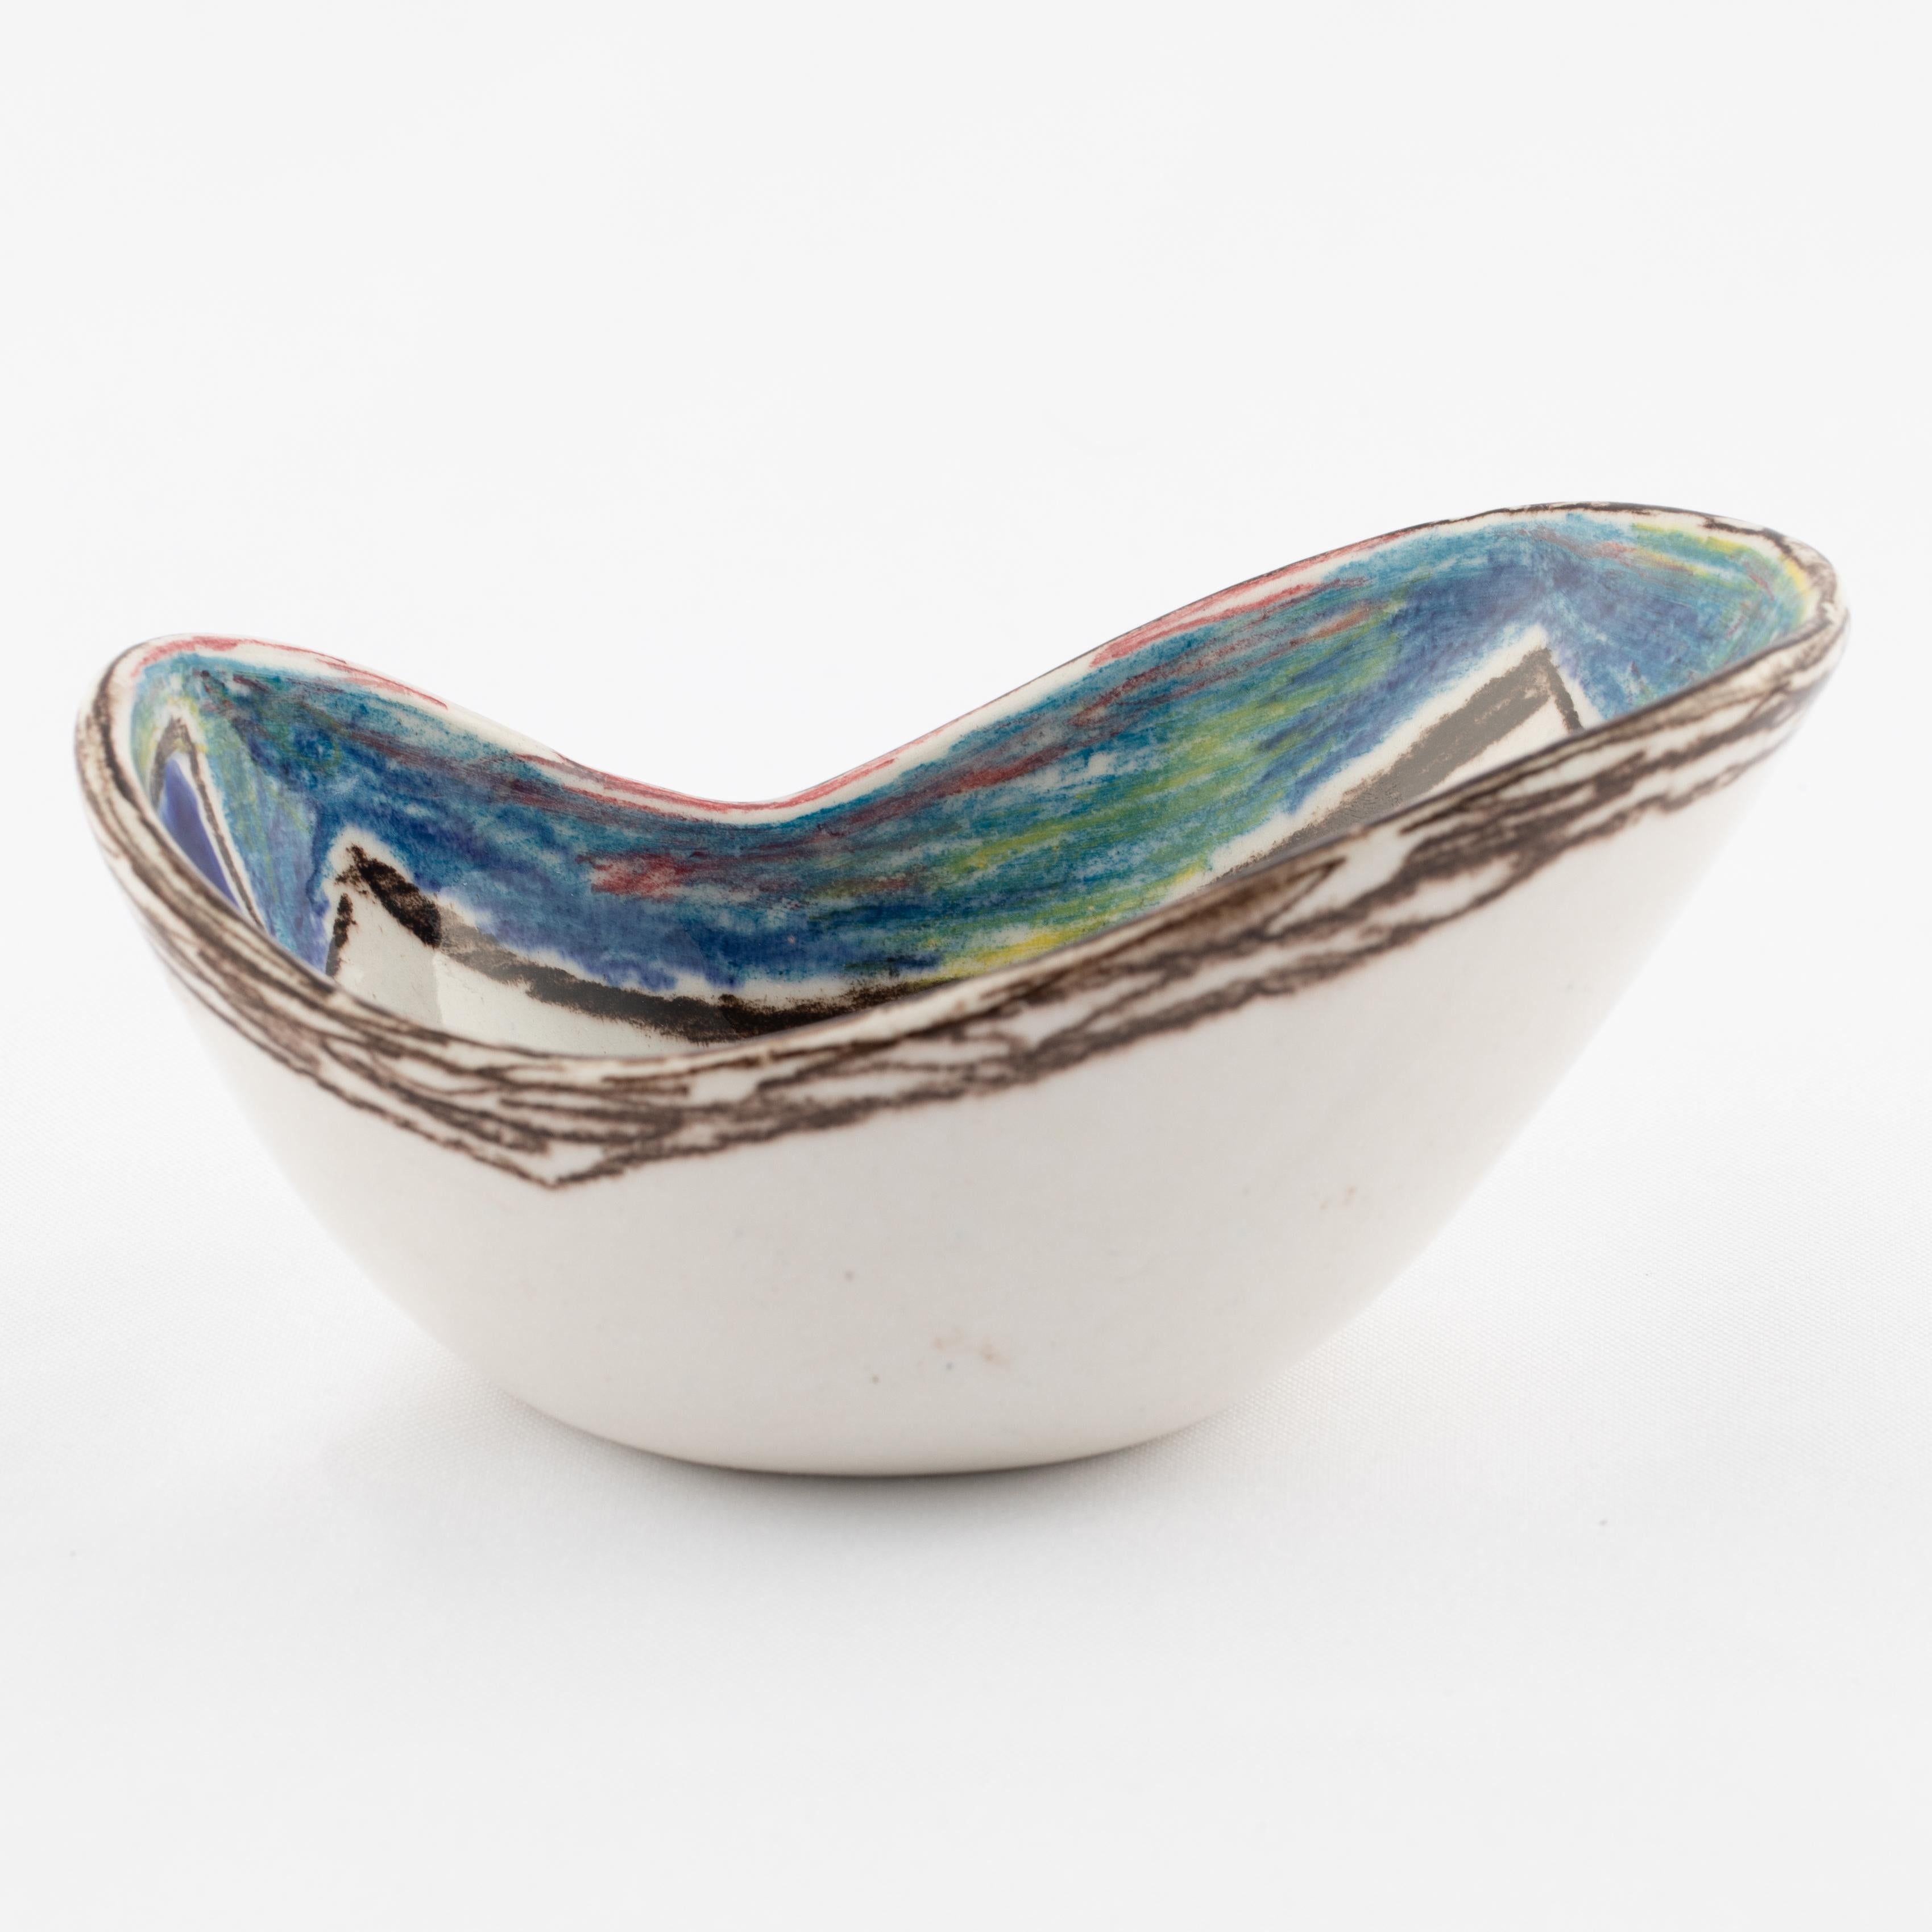 Marcello Fantoni Ceramic Bowl with Abstract Design, circa 1960s For Sale 2